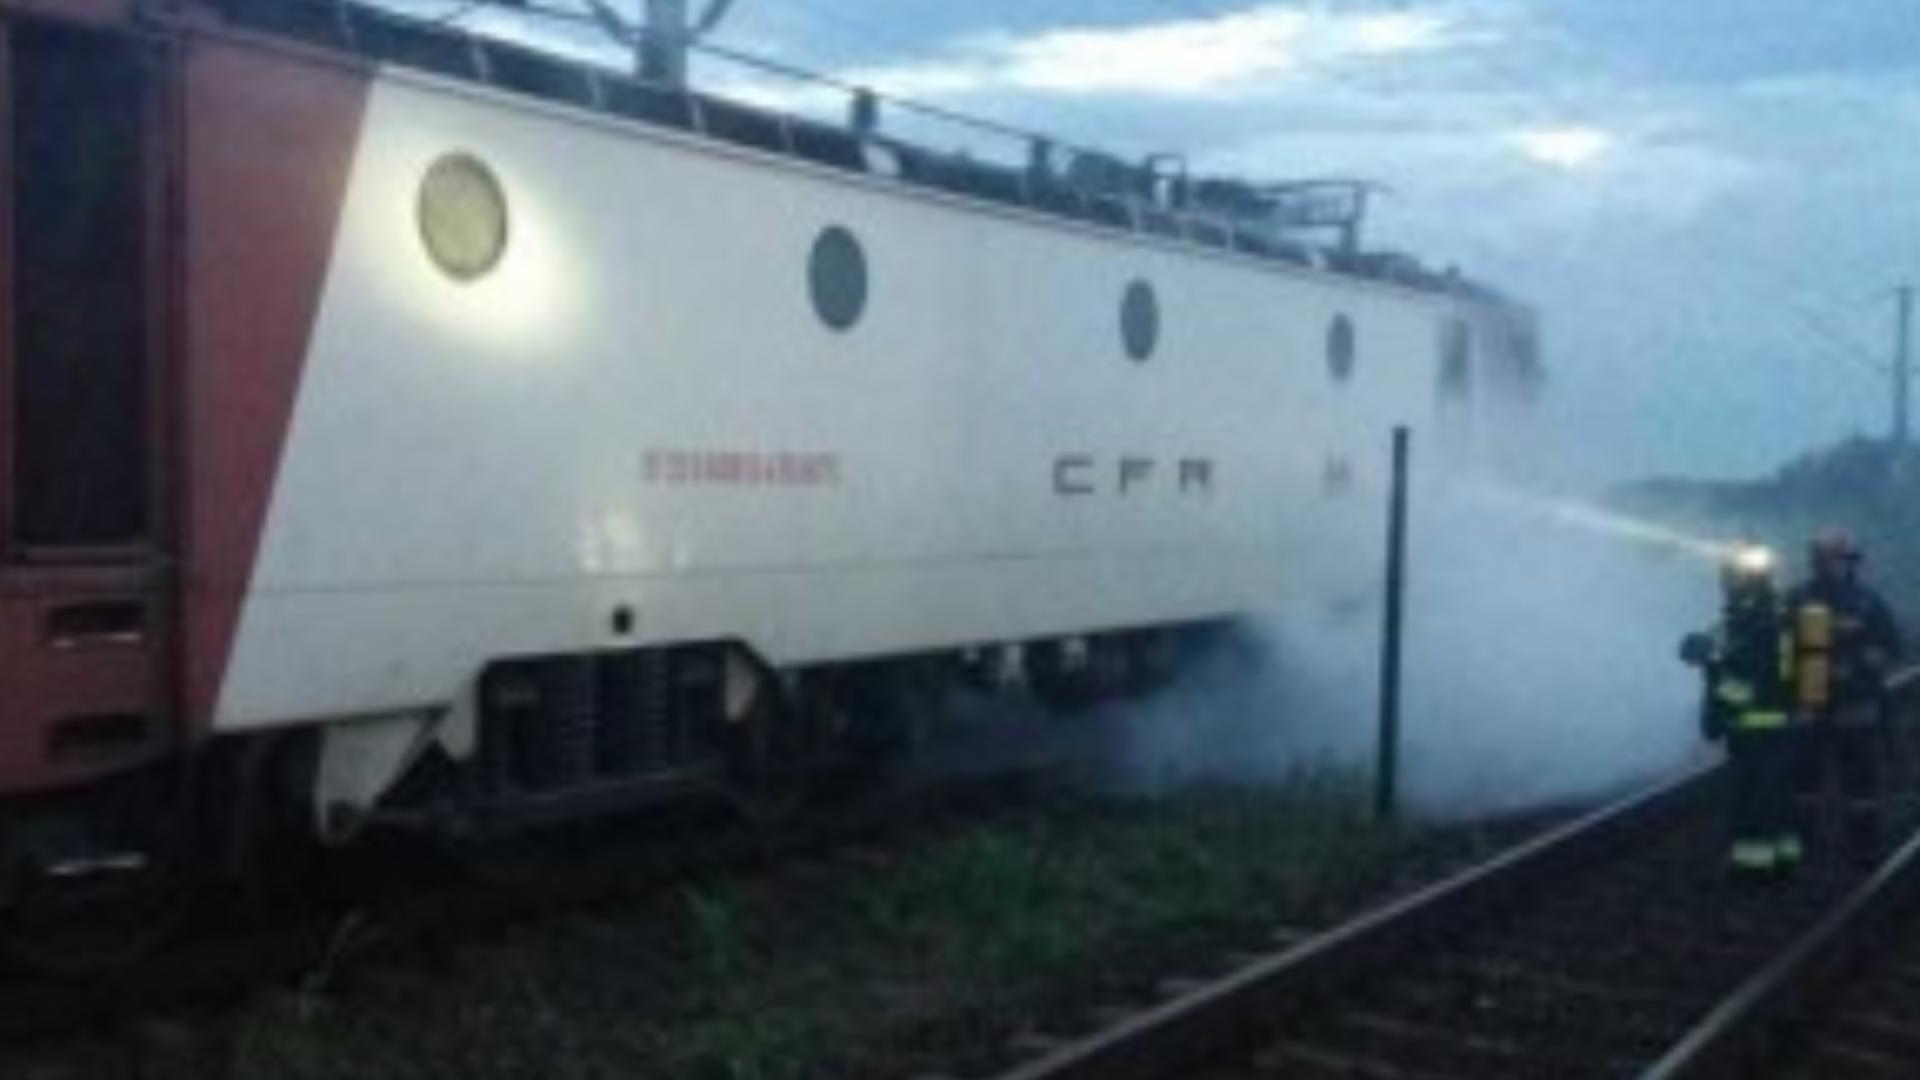 Alertă la Vaslui: A luat foc locomotiva unui tren - Pompierii intervin pentru a stinge flăcările